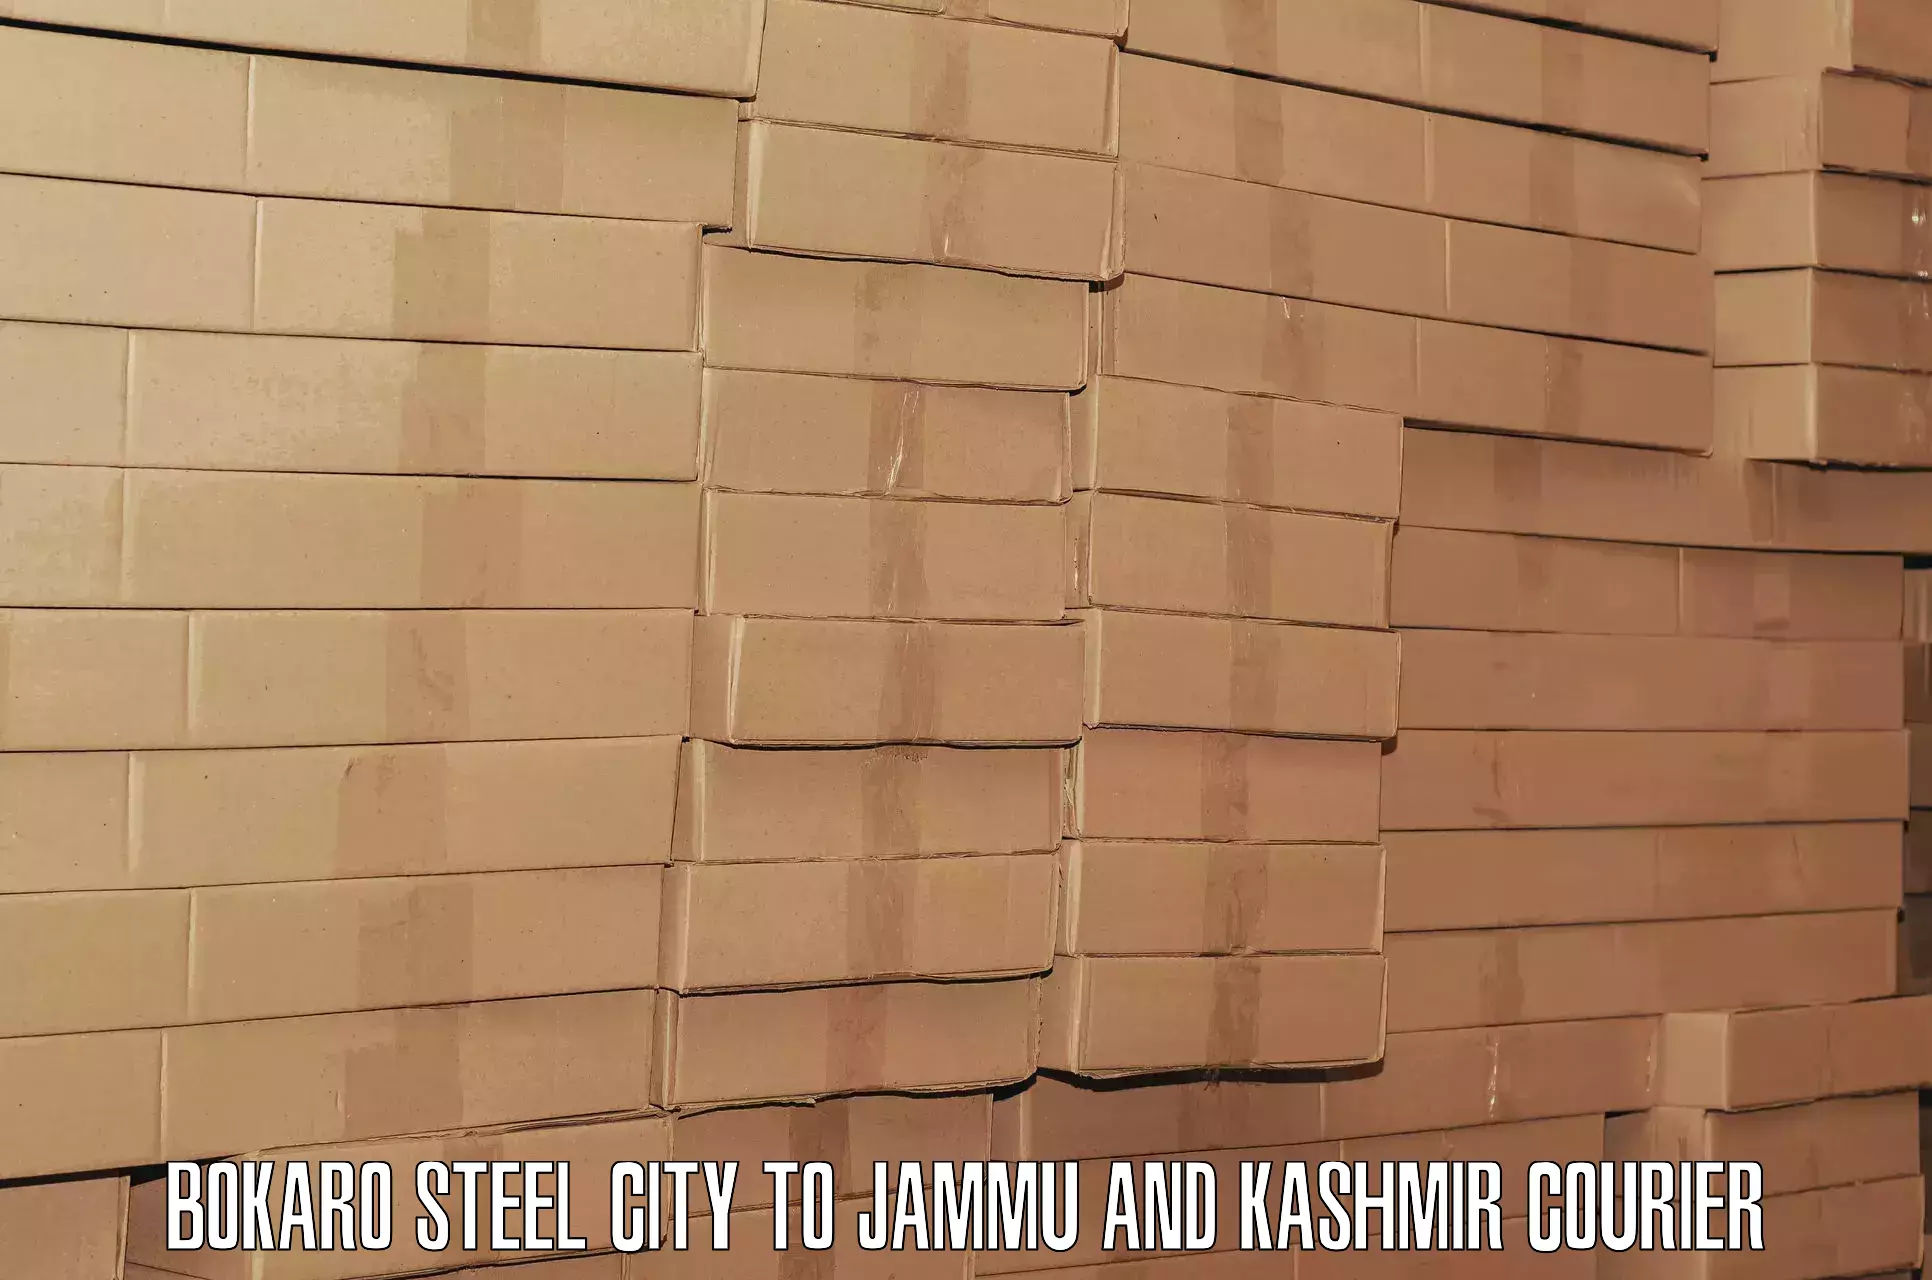 Door-to-door baggage service Bokaro Steel City to University of Jammu